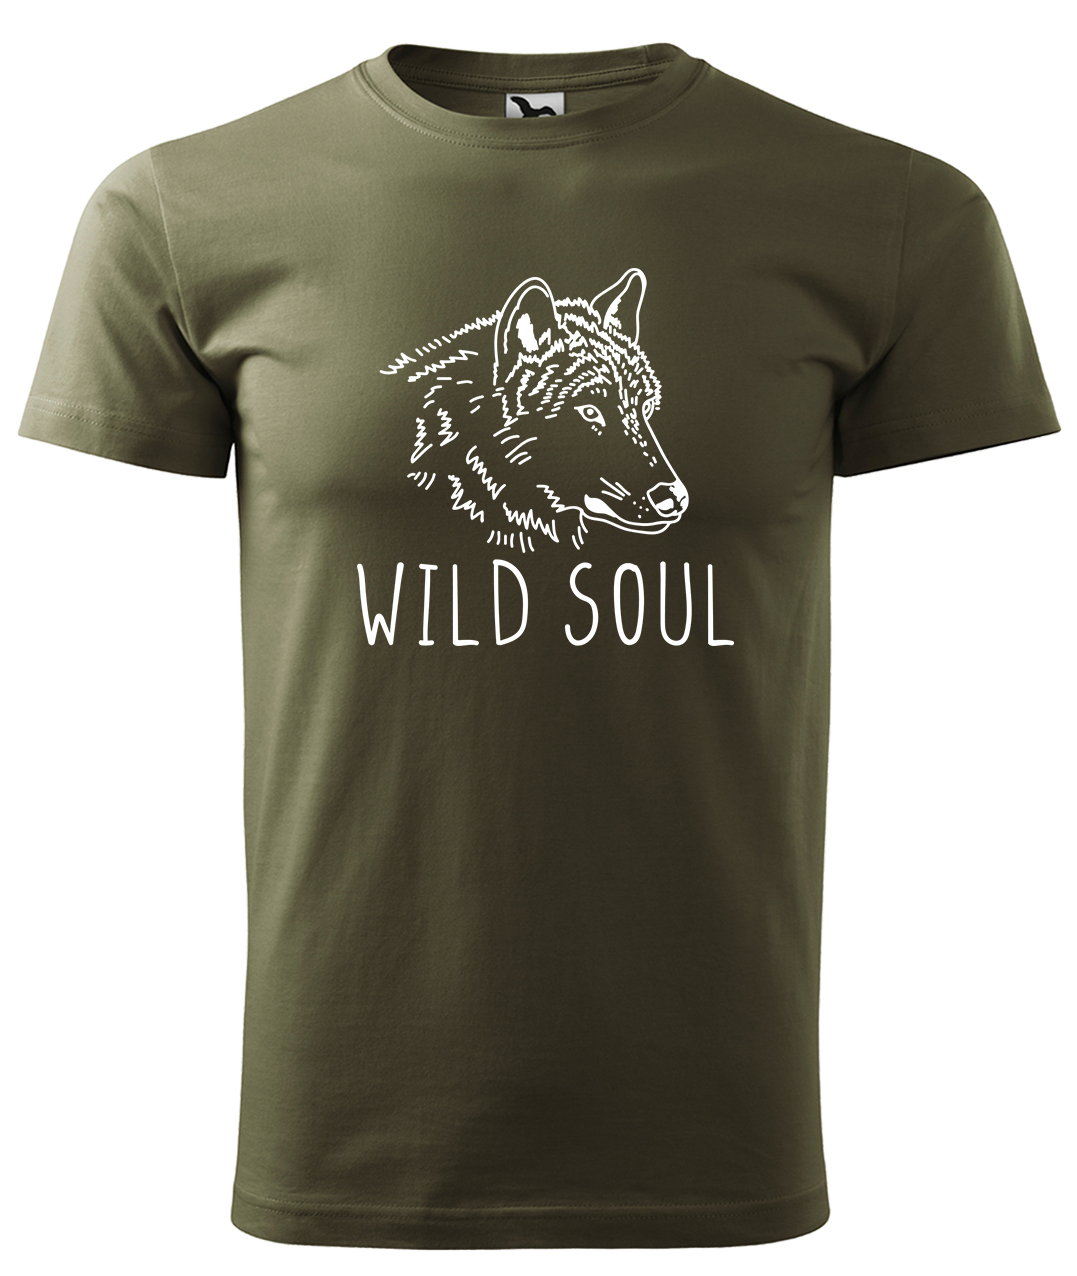 Dětské tričko s vlkem - Wild soul Velikost: 4 roky / 110 cm, Barva: Military (69), Délka rukávu: Krátký rukáv